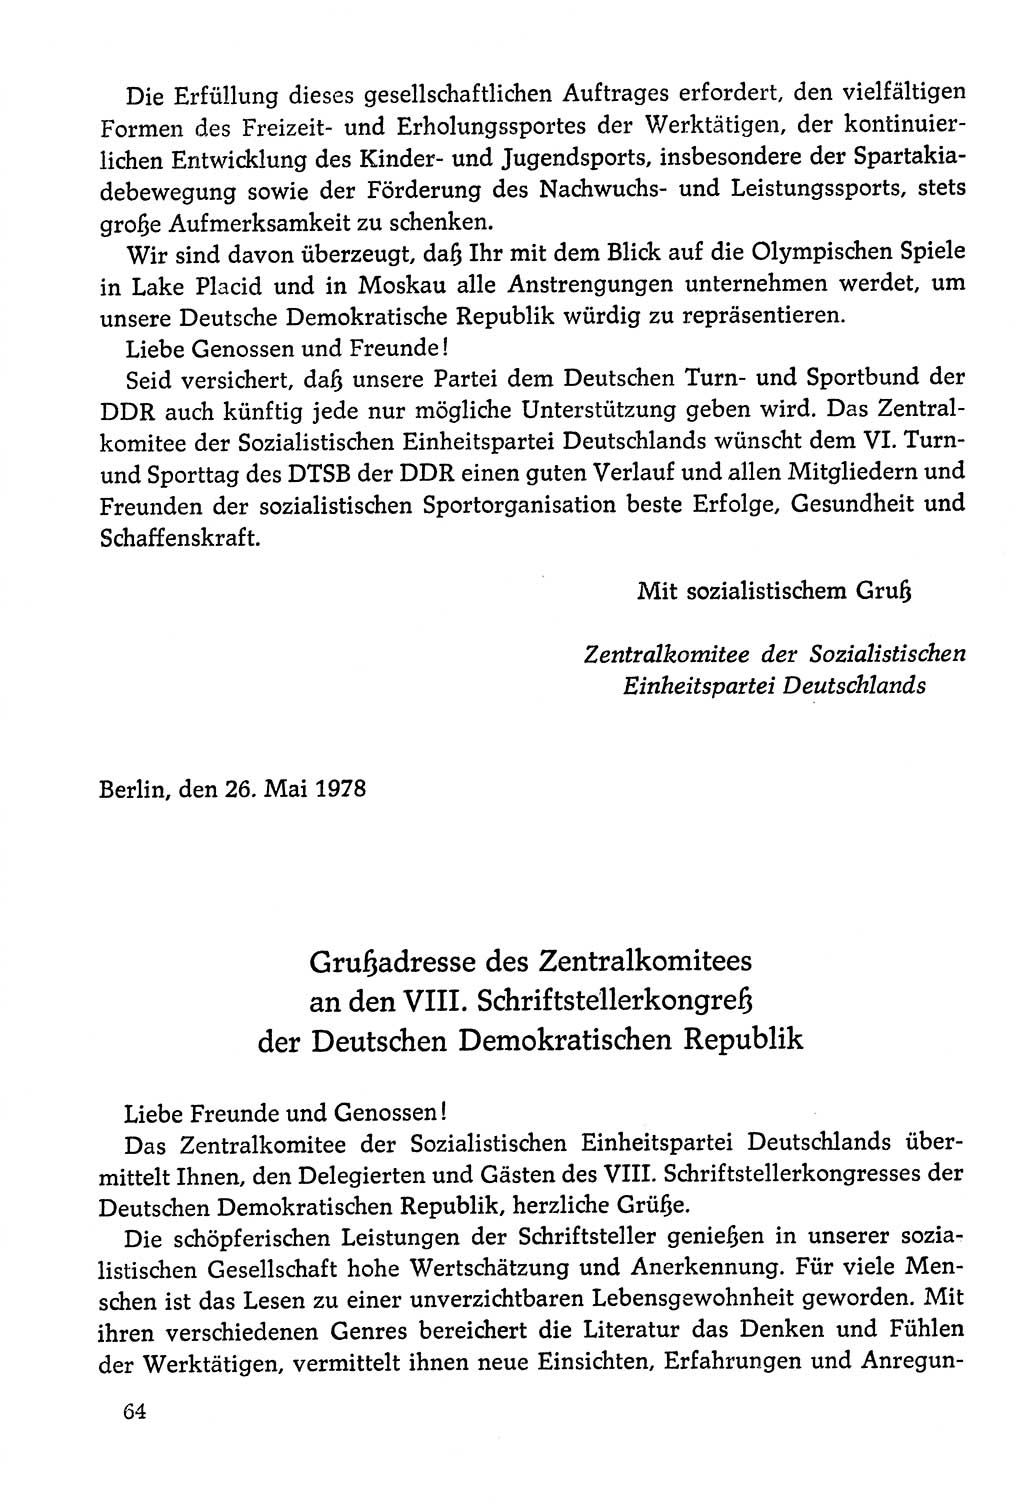 Dokumente der Sozialistischen Einheitspartei Deutschlands (SED) [Deutsche Demokratische Republik (DDR)] 1978-1979, Seite 64 (Dok. SED DDR 1978-1979, S. 64)